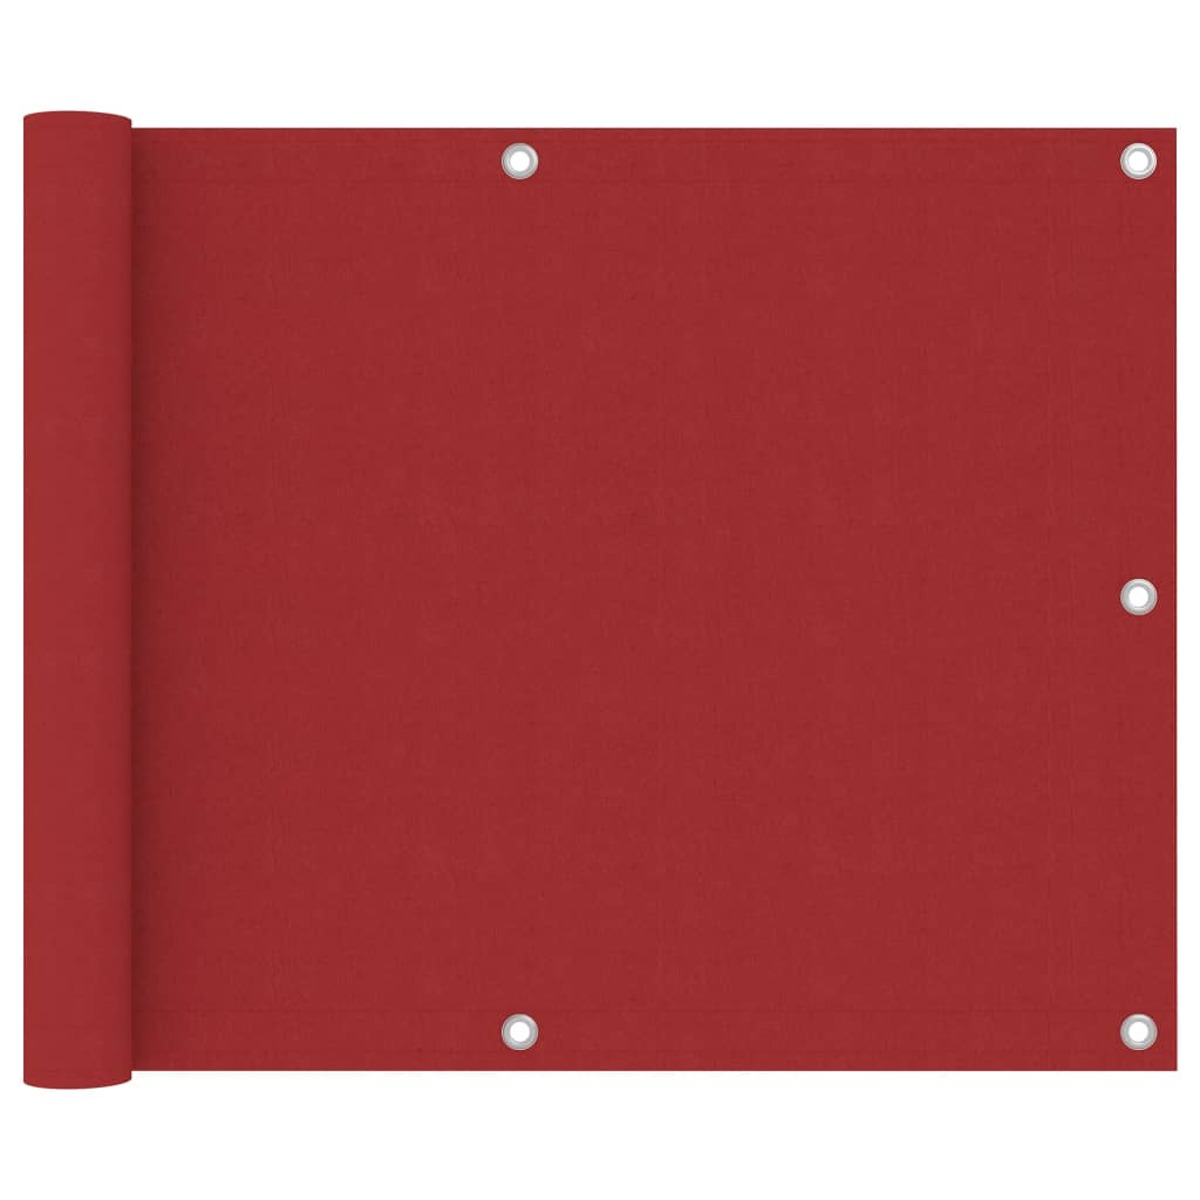 VIDAXL Rot Sichtschutz, 135035